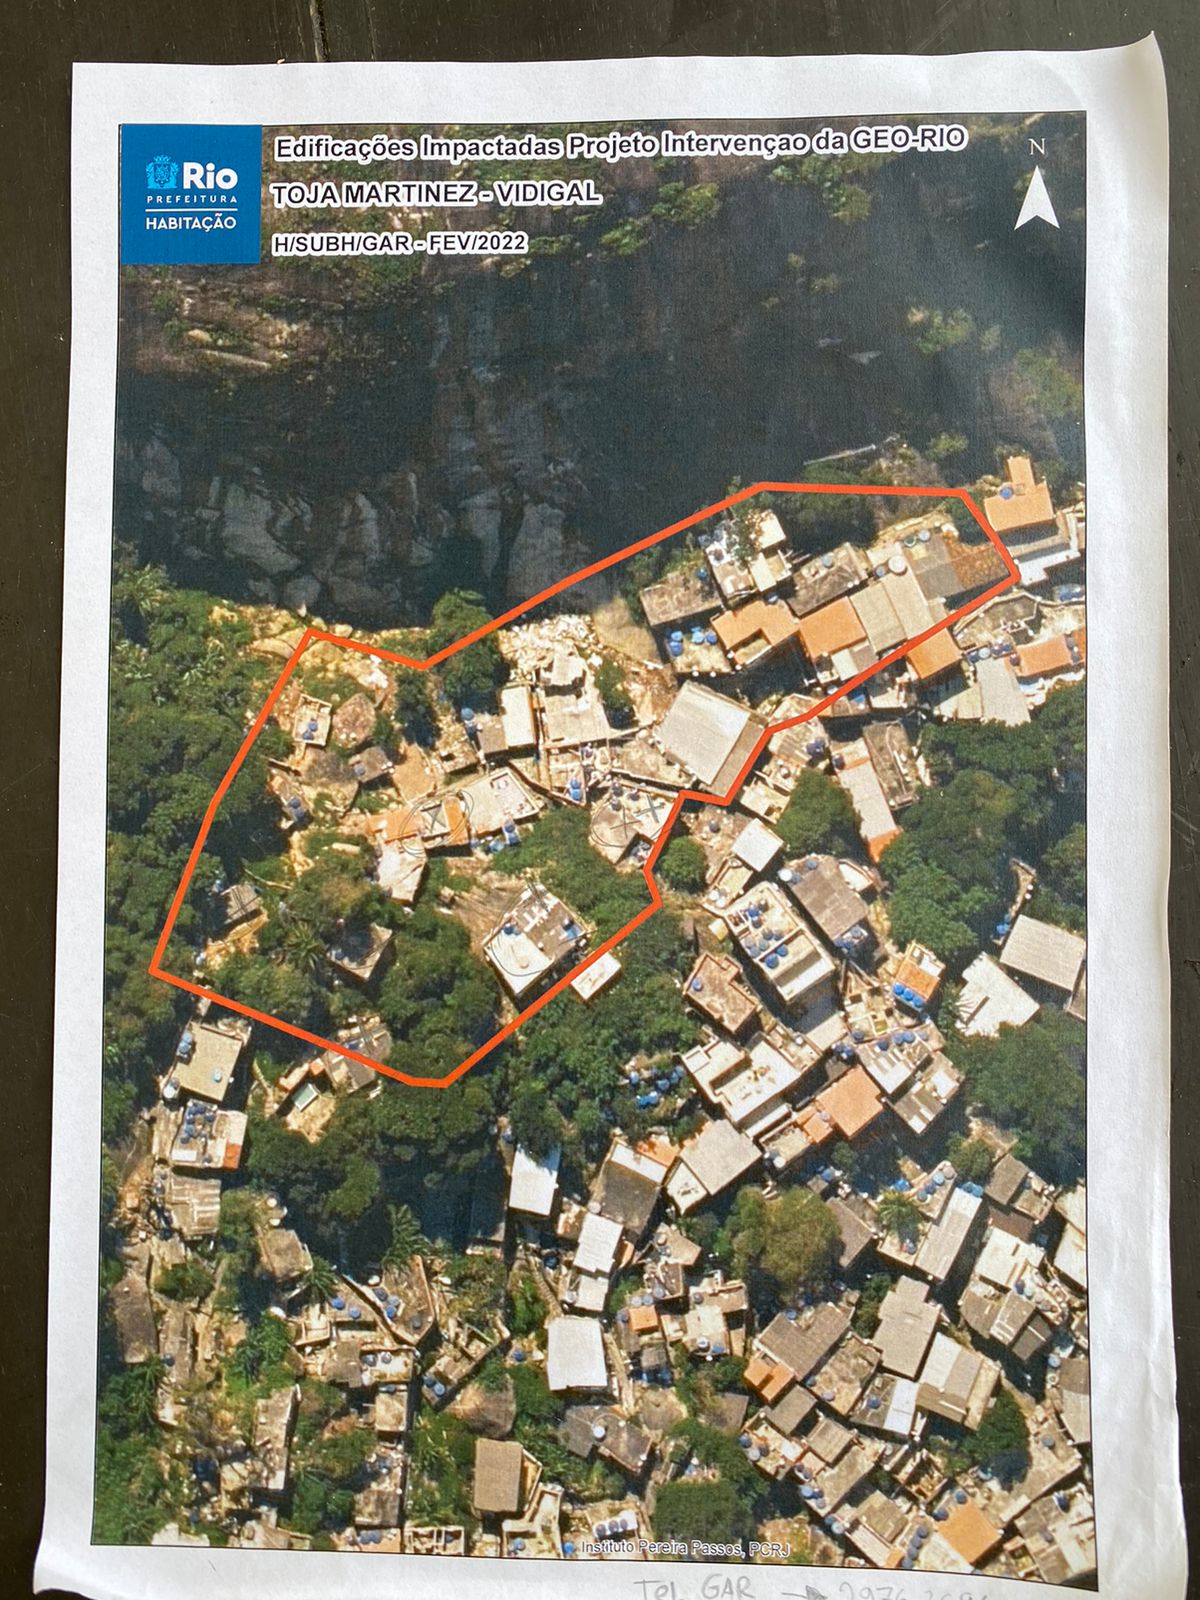 Mapeamento atual de casas que serão removidas na área da Jaqueira. Fonte: Geo-Rio